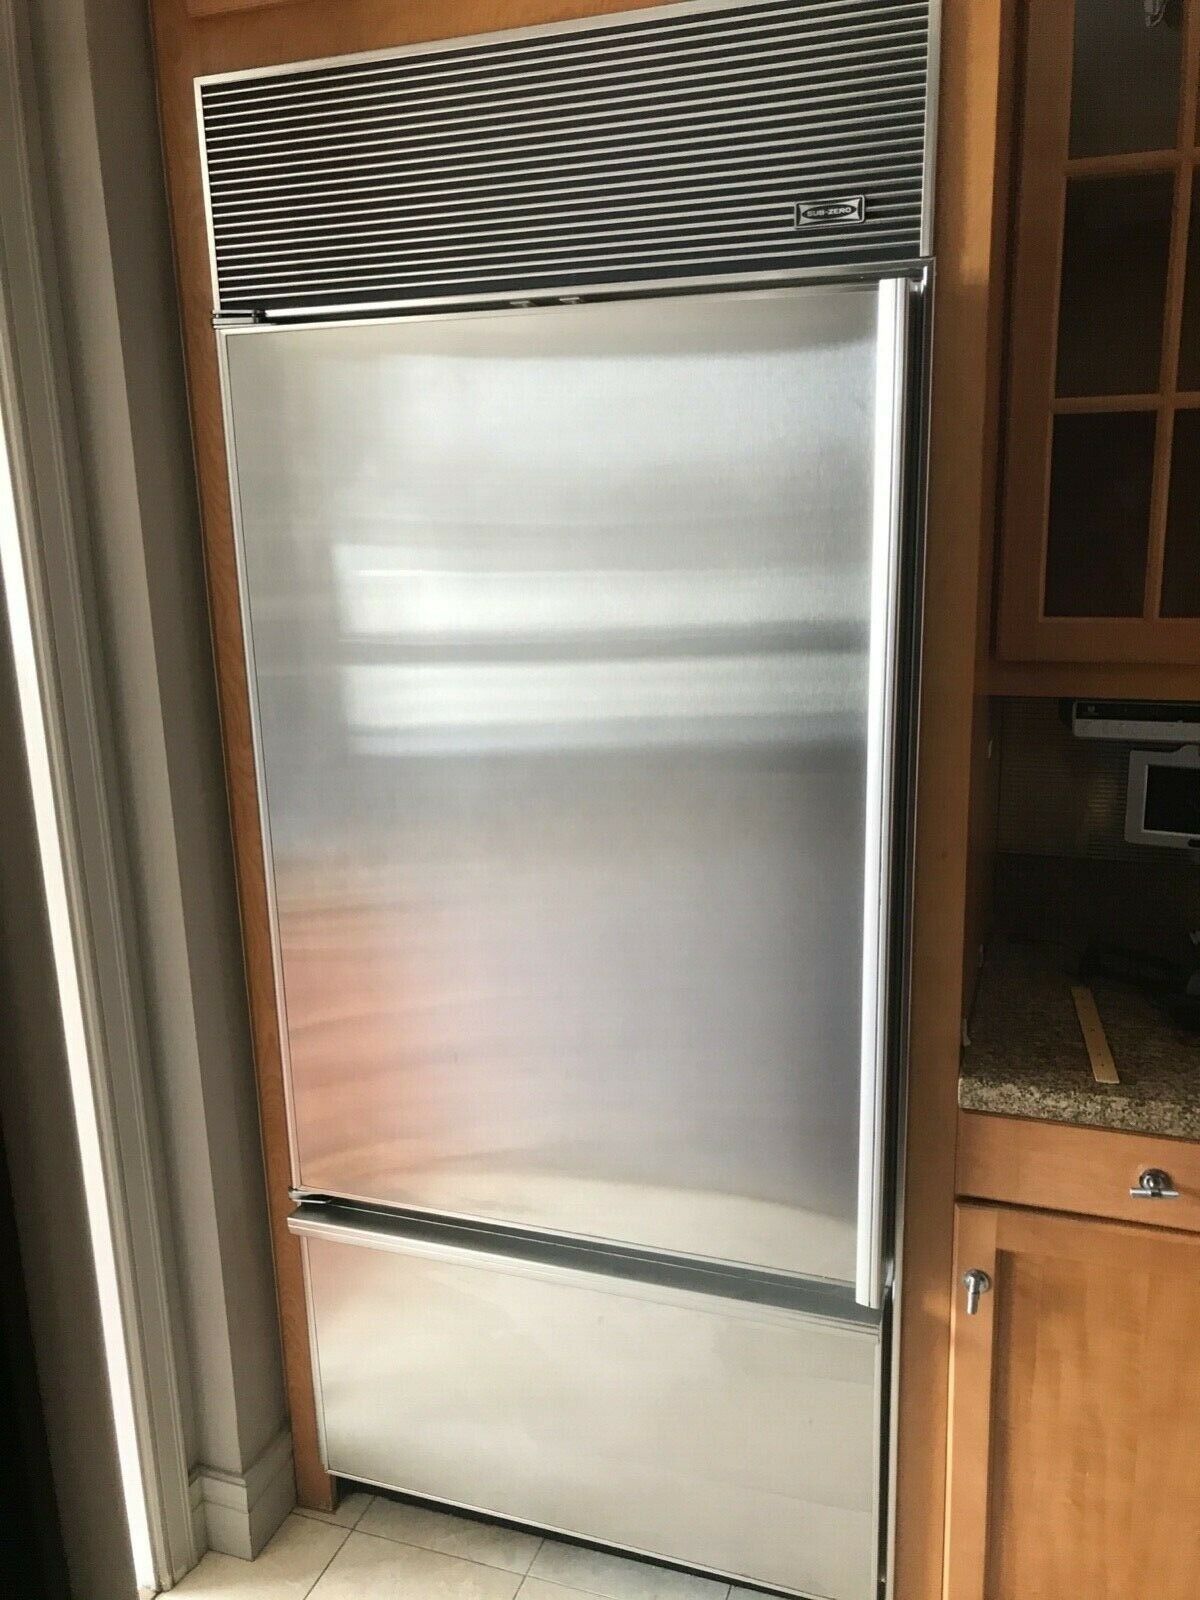 Sub Zero Refrigerators Cost